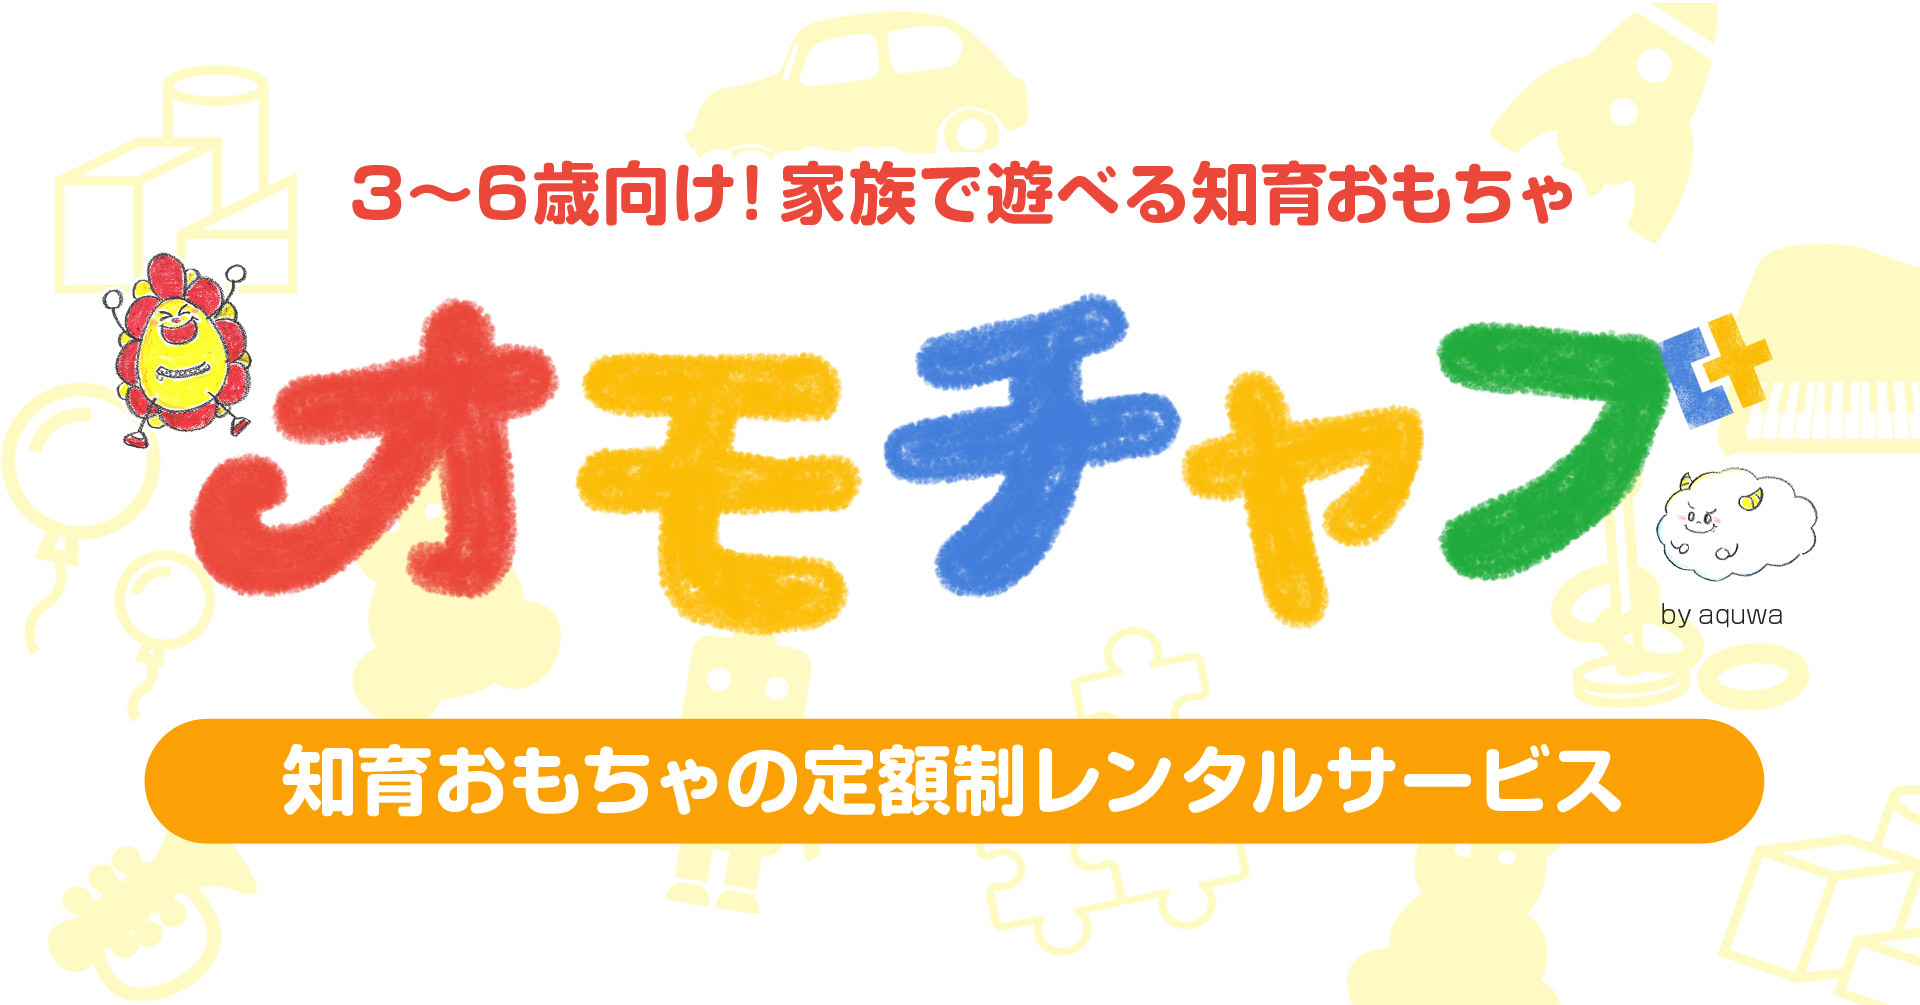 合計 3万円 相当の知育おもちゃ 2ヶ月間無料で遊べる機会を提供いたします 株式会社aquwaのプレスリリース